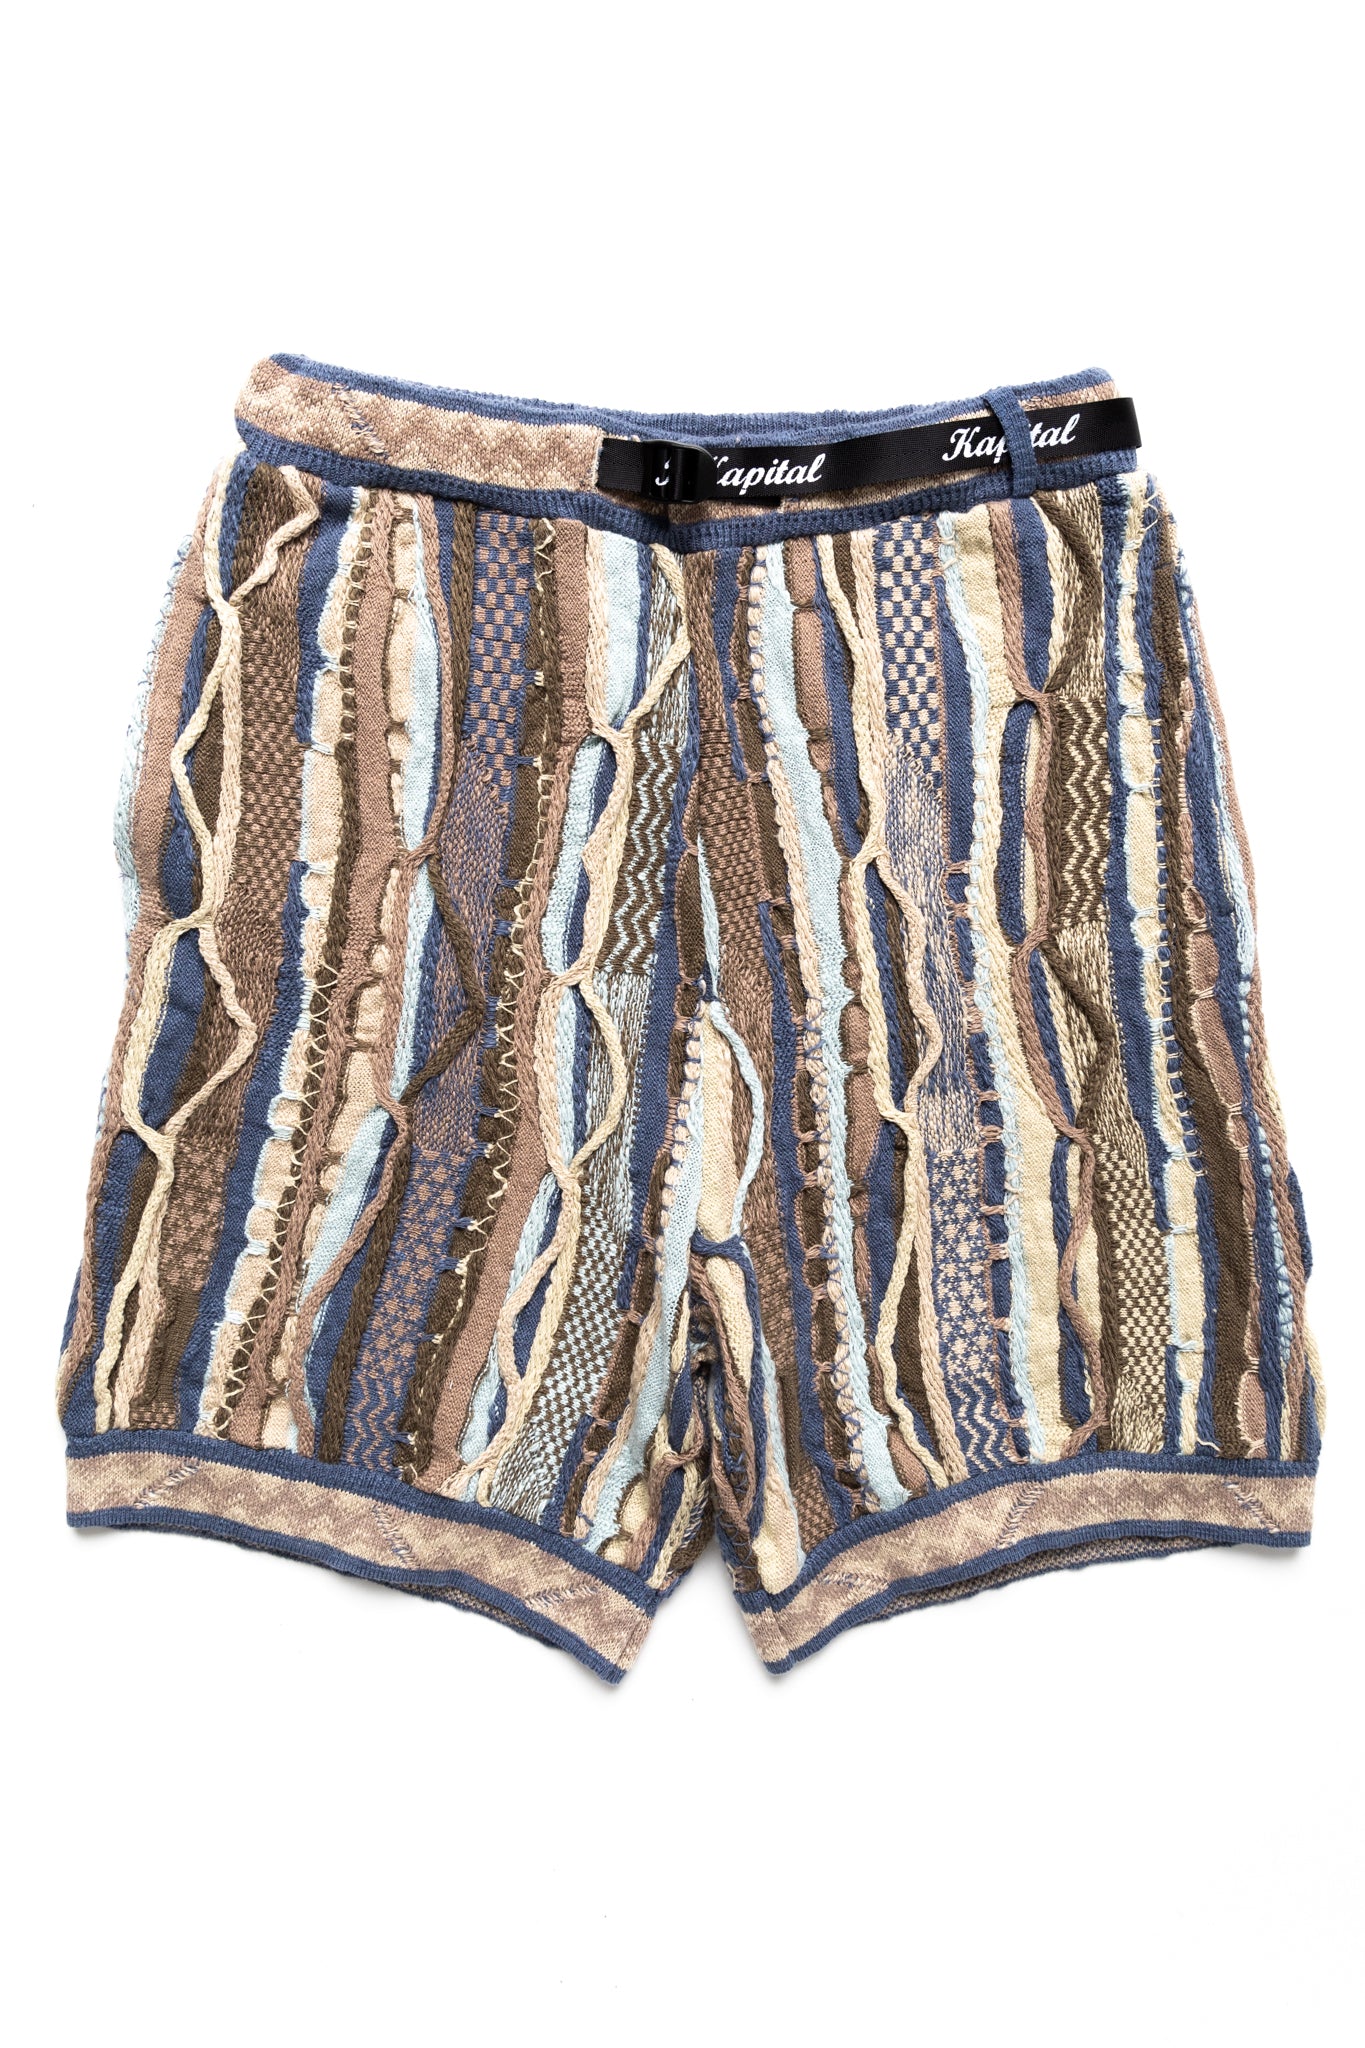 7G Knit GAUDY Shorts - Navy